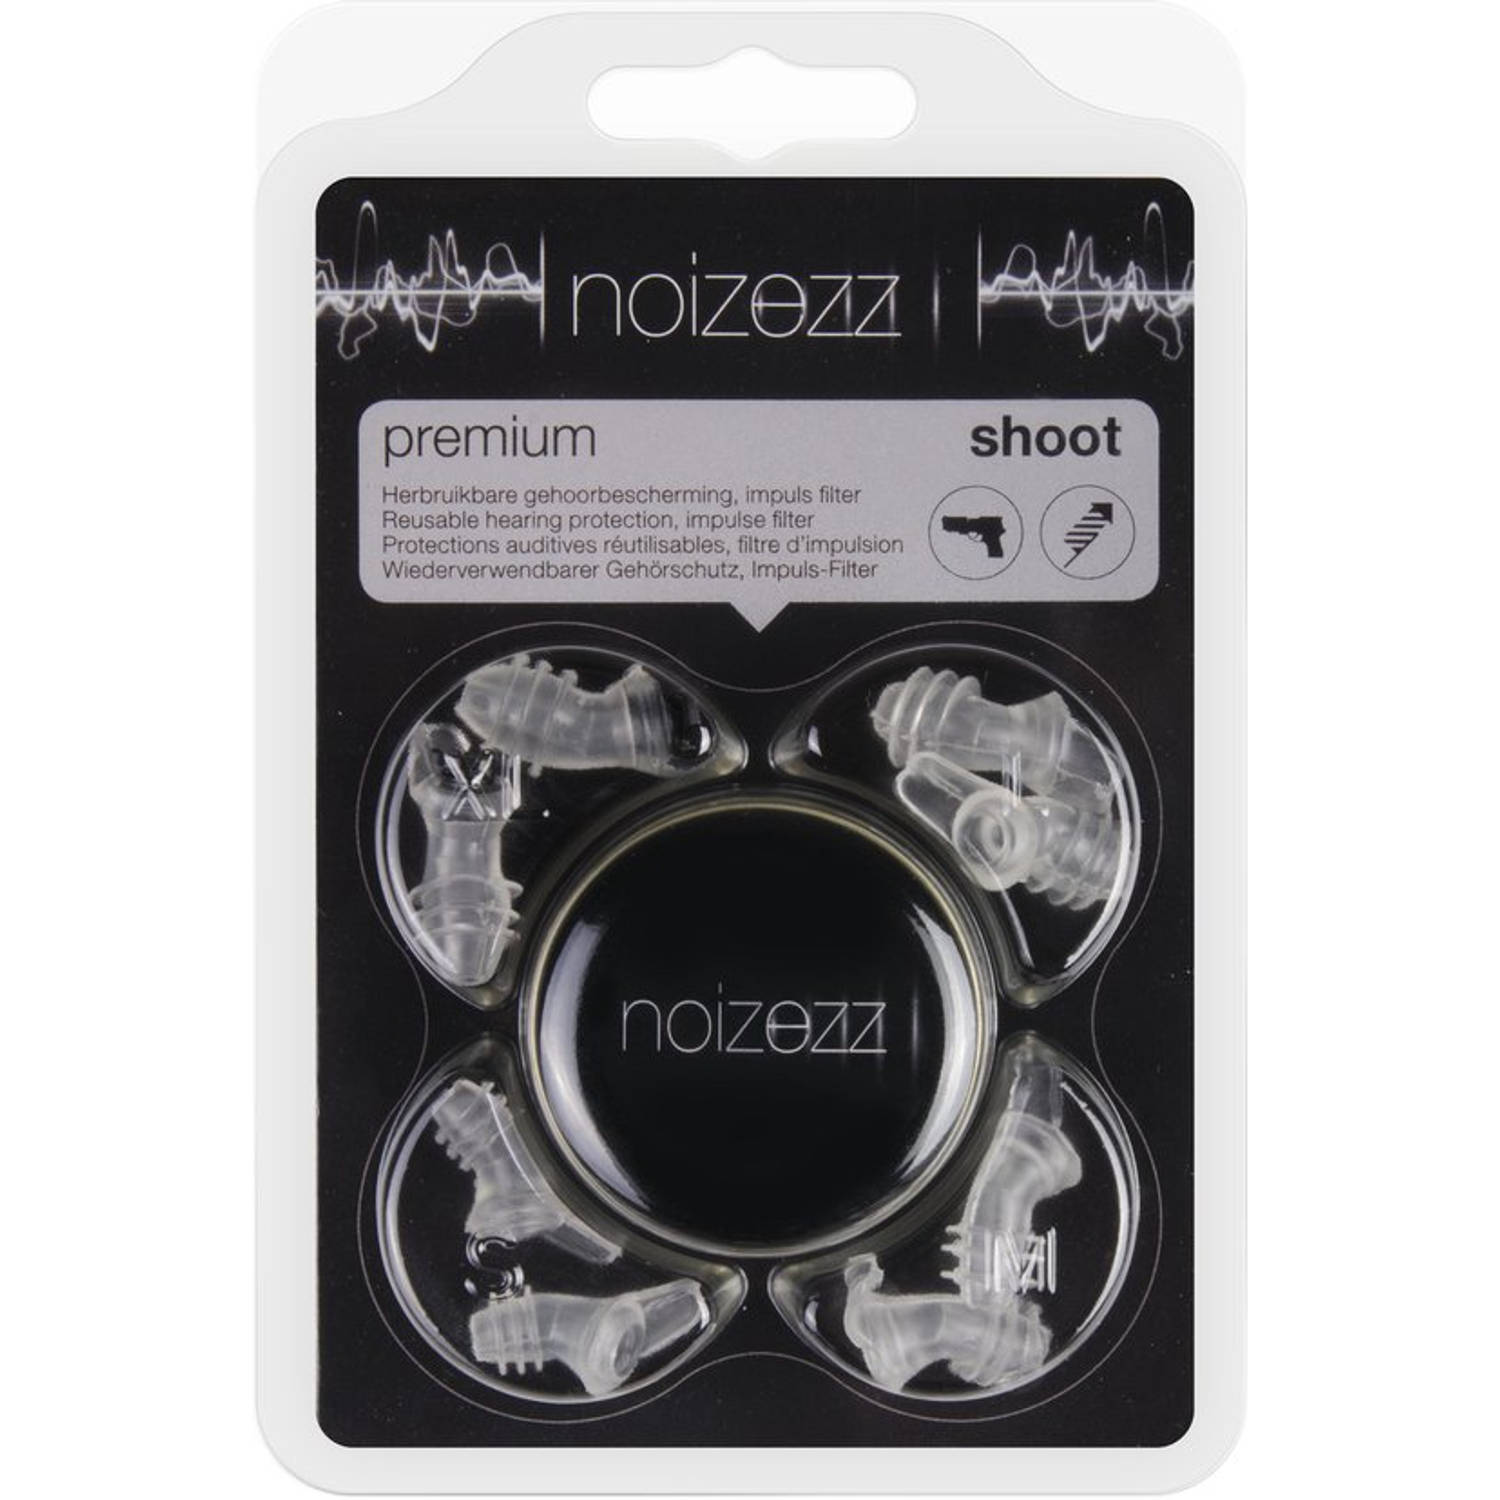 NOIZEZZ Premium Shoot - 4 maten